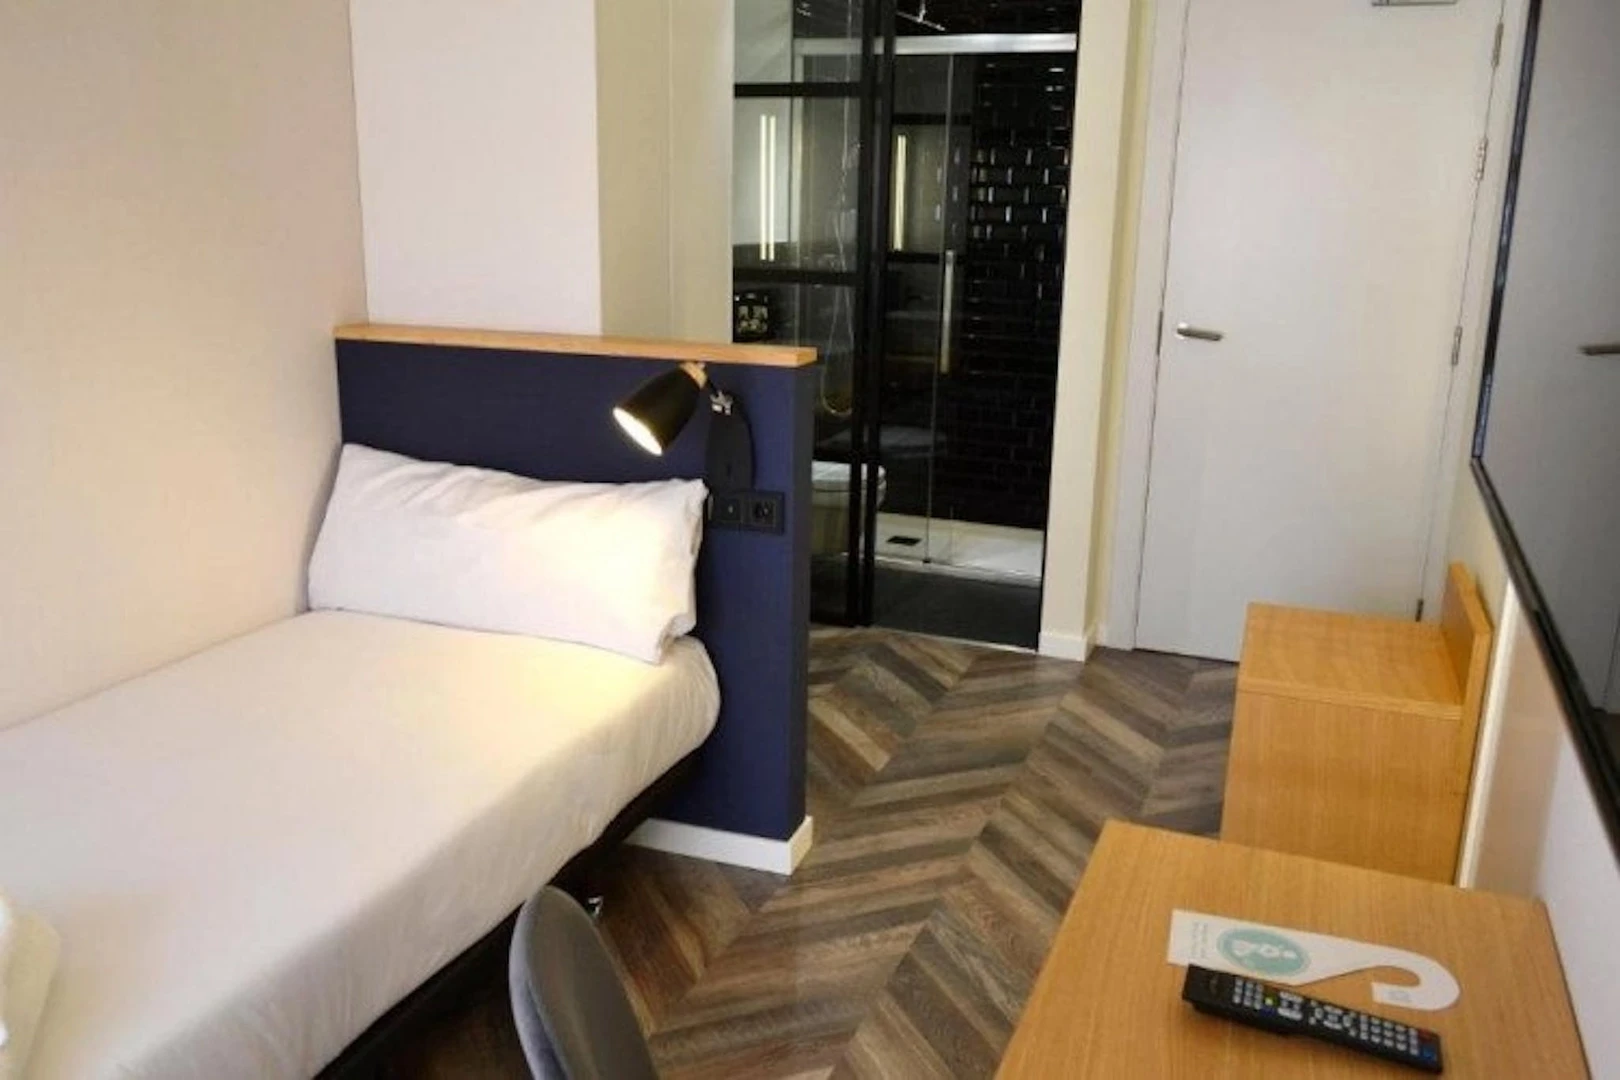 A Coruña içinde 2 yatak odalı konaklama